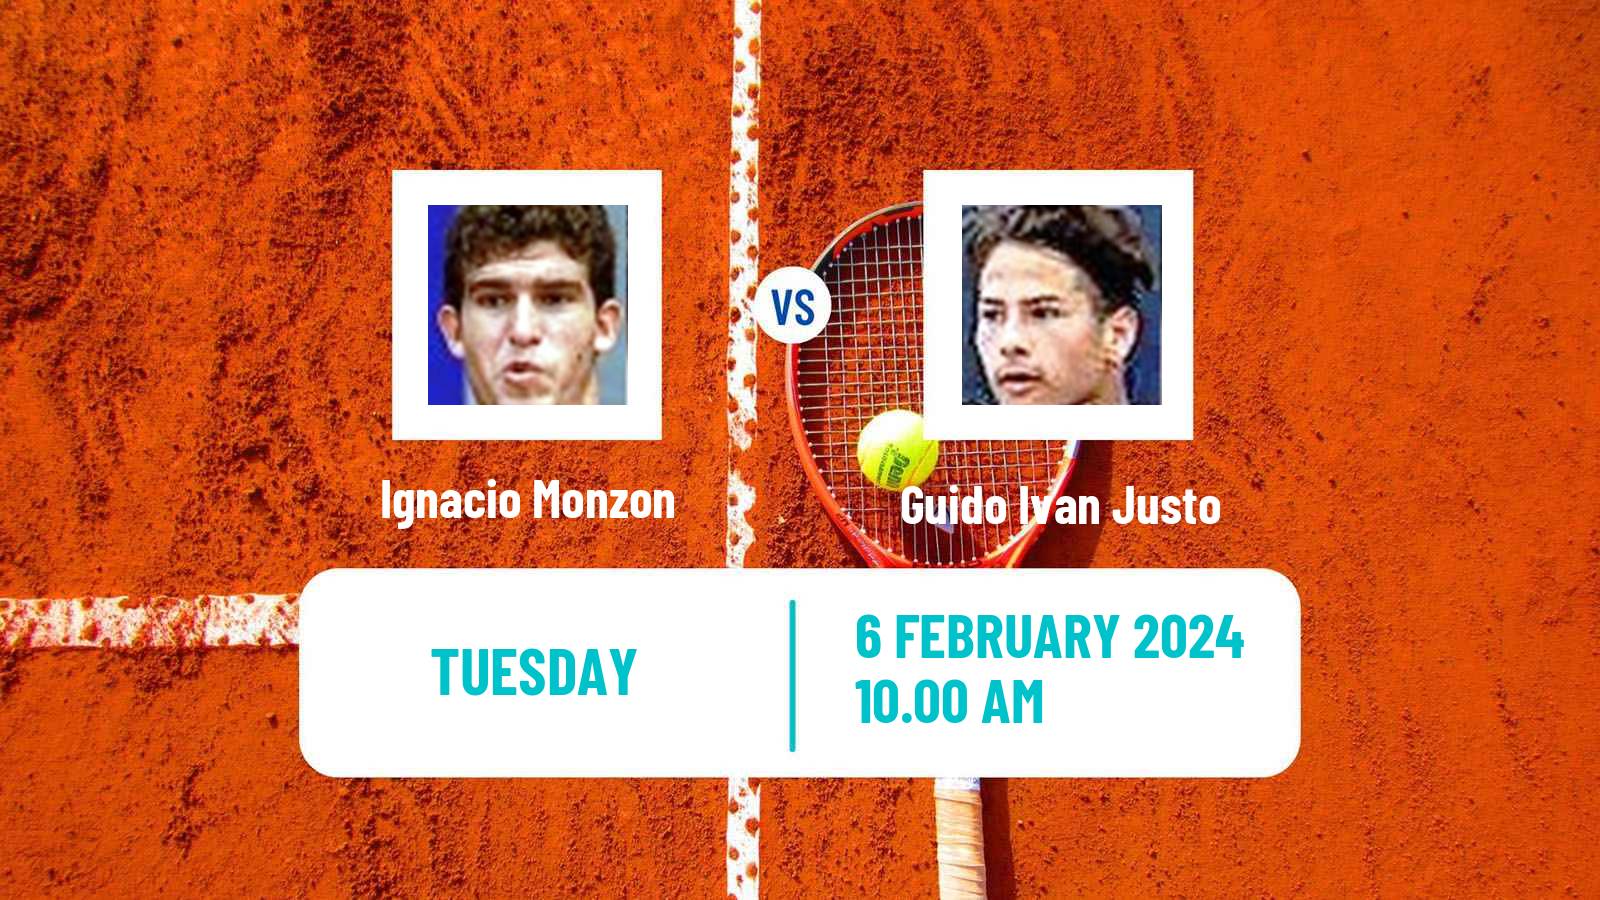 Tennis ITF M25 Punta Del Este Men Ignacio Monzon - Guido Ivan Justo